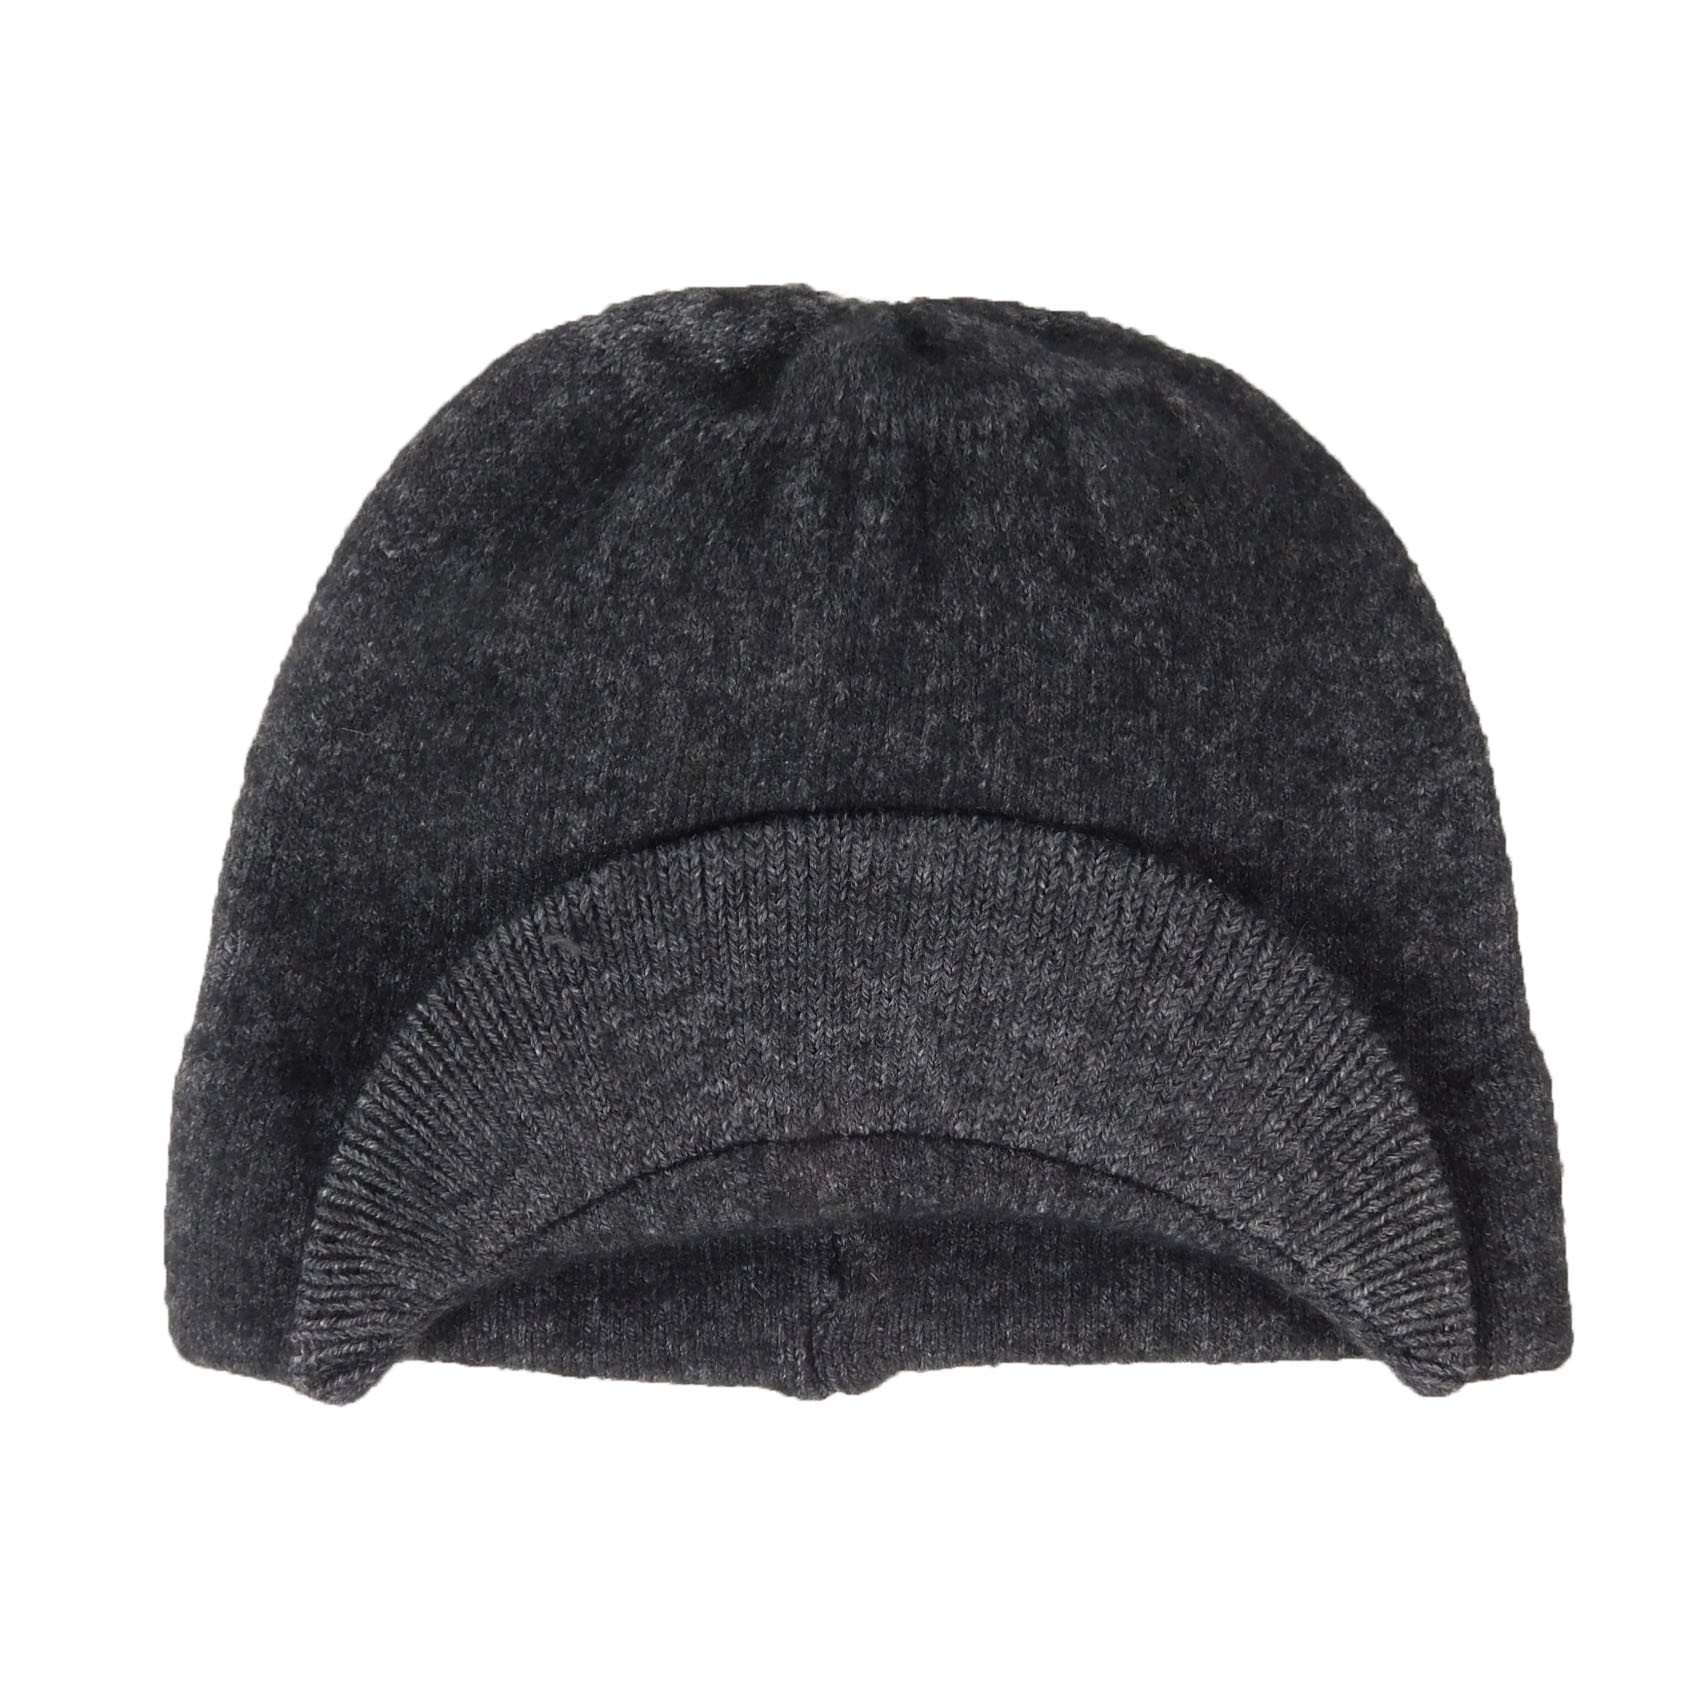 Wool Radar Beanie Beanie Dorfman Hat Co. MWWK950GY1 Grey  